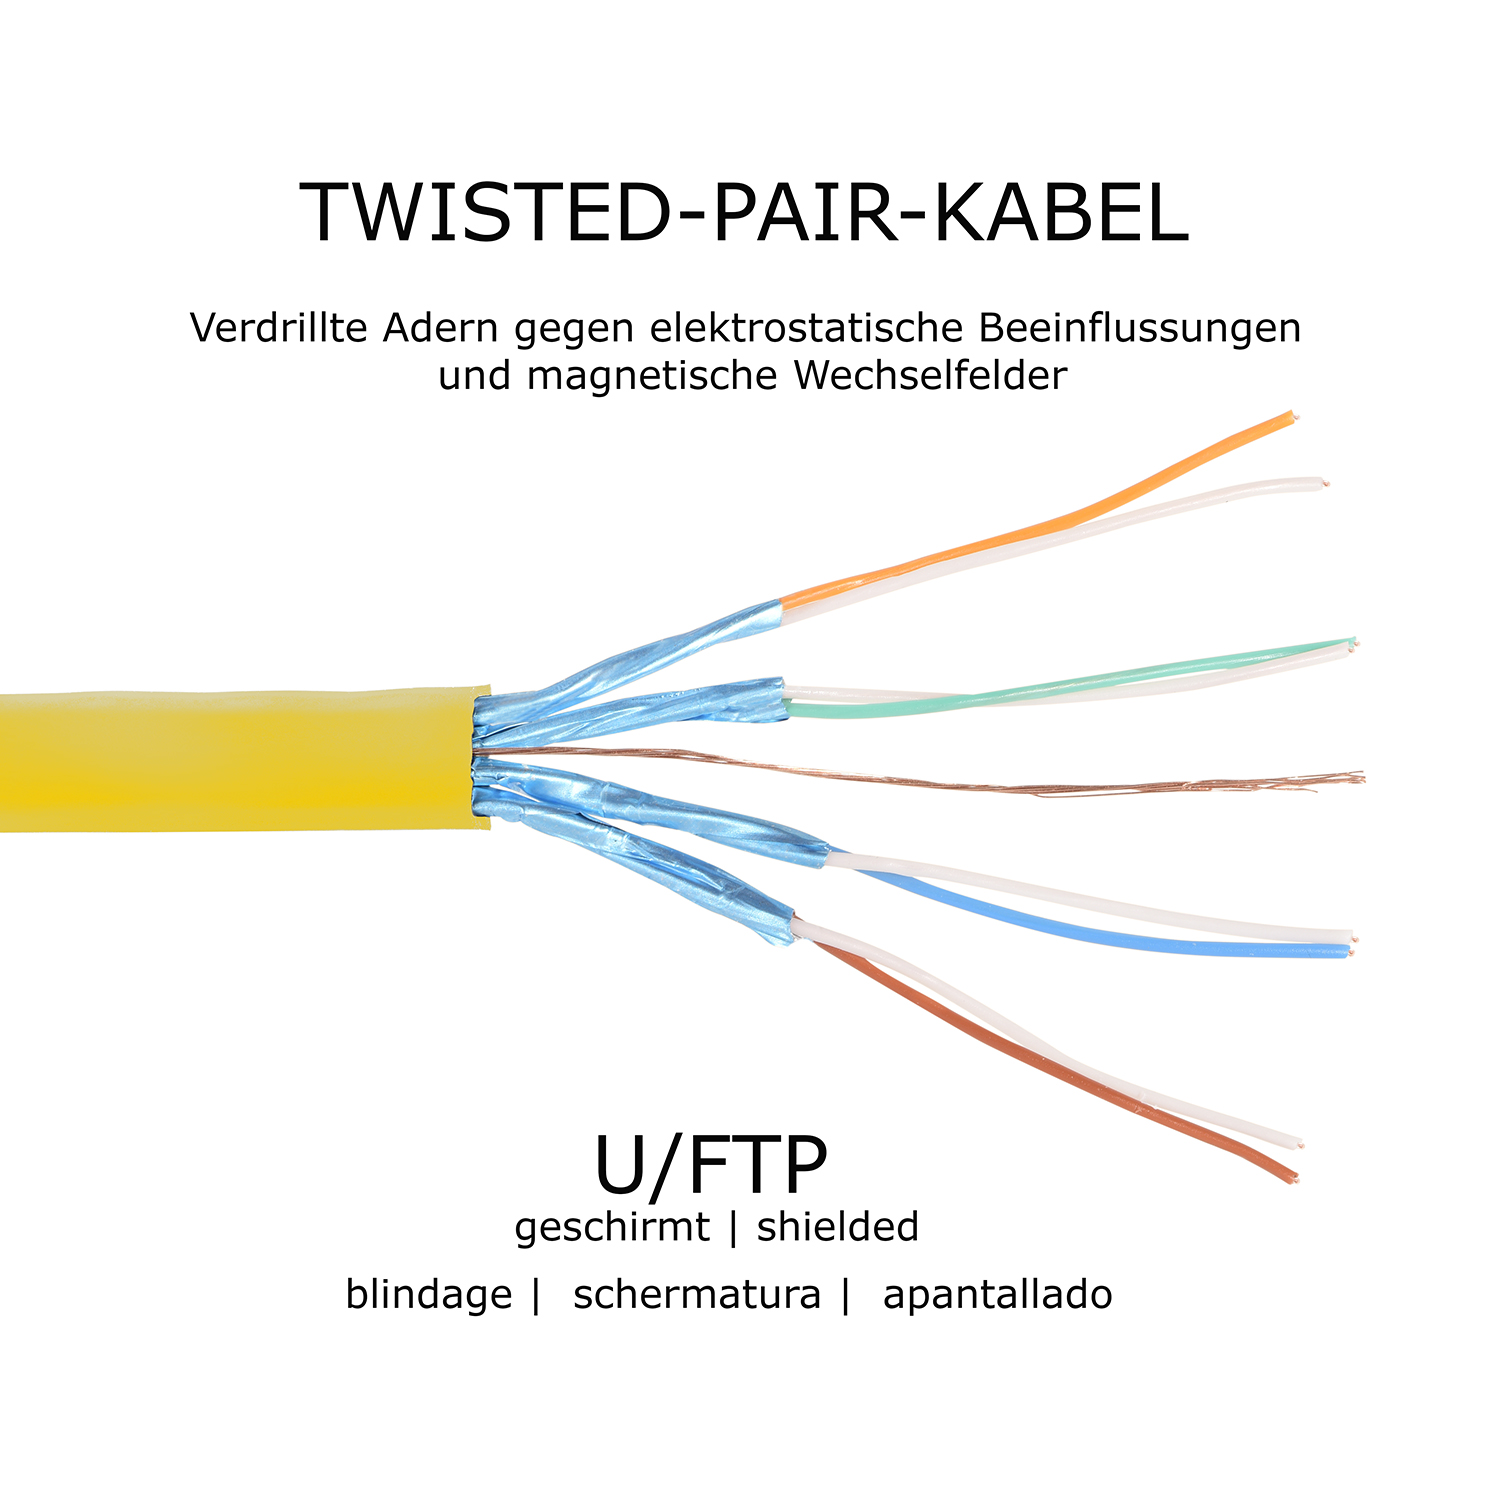 TPFNET 7,5m Patchkabel / 10 Netzwerkkabel, Flachkabel U/FTP m gelb, GBit, 7,5